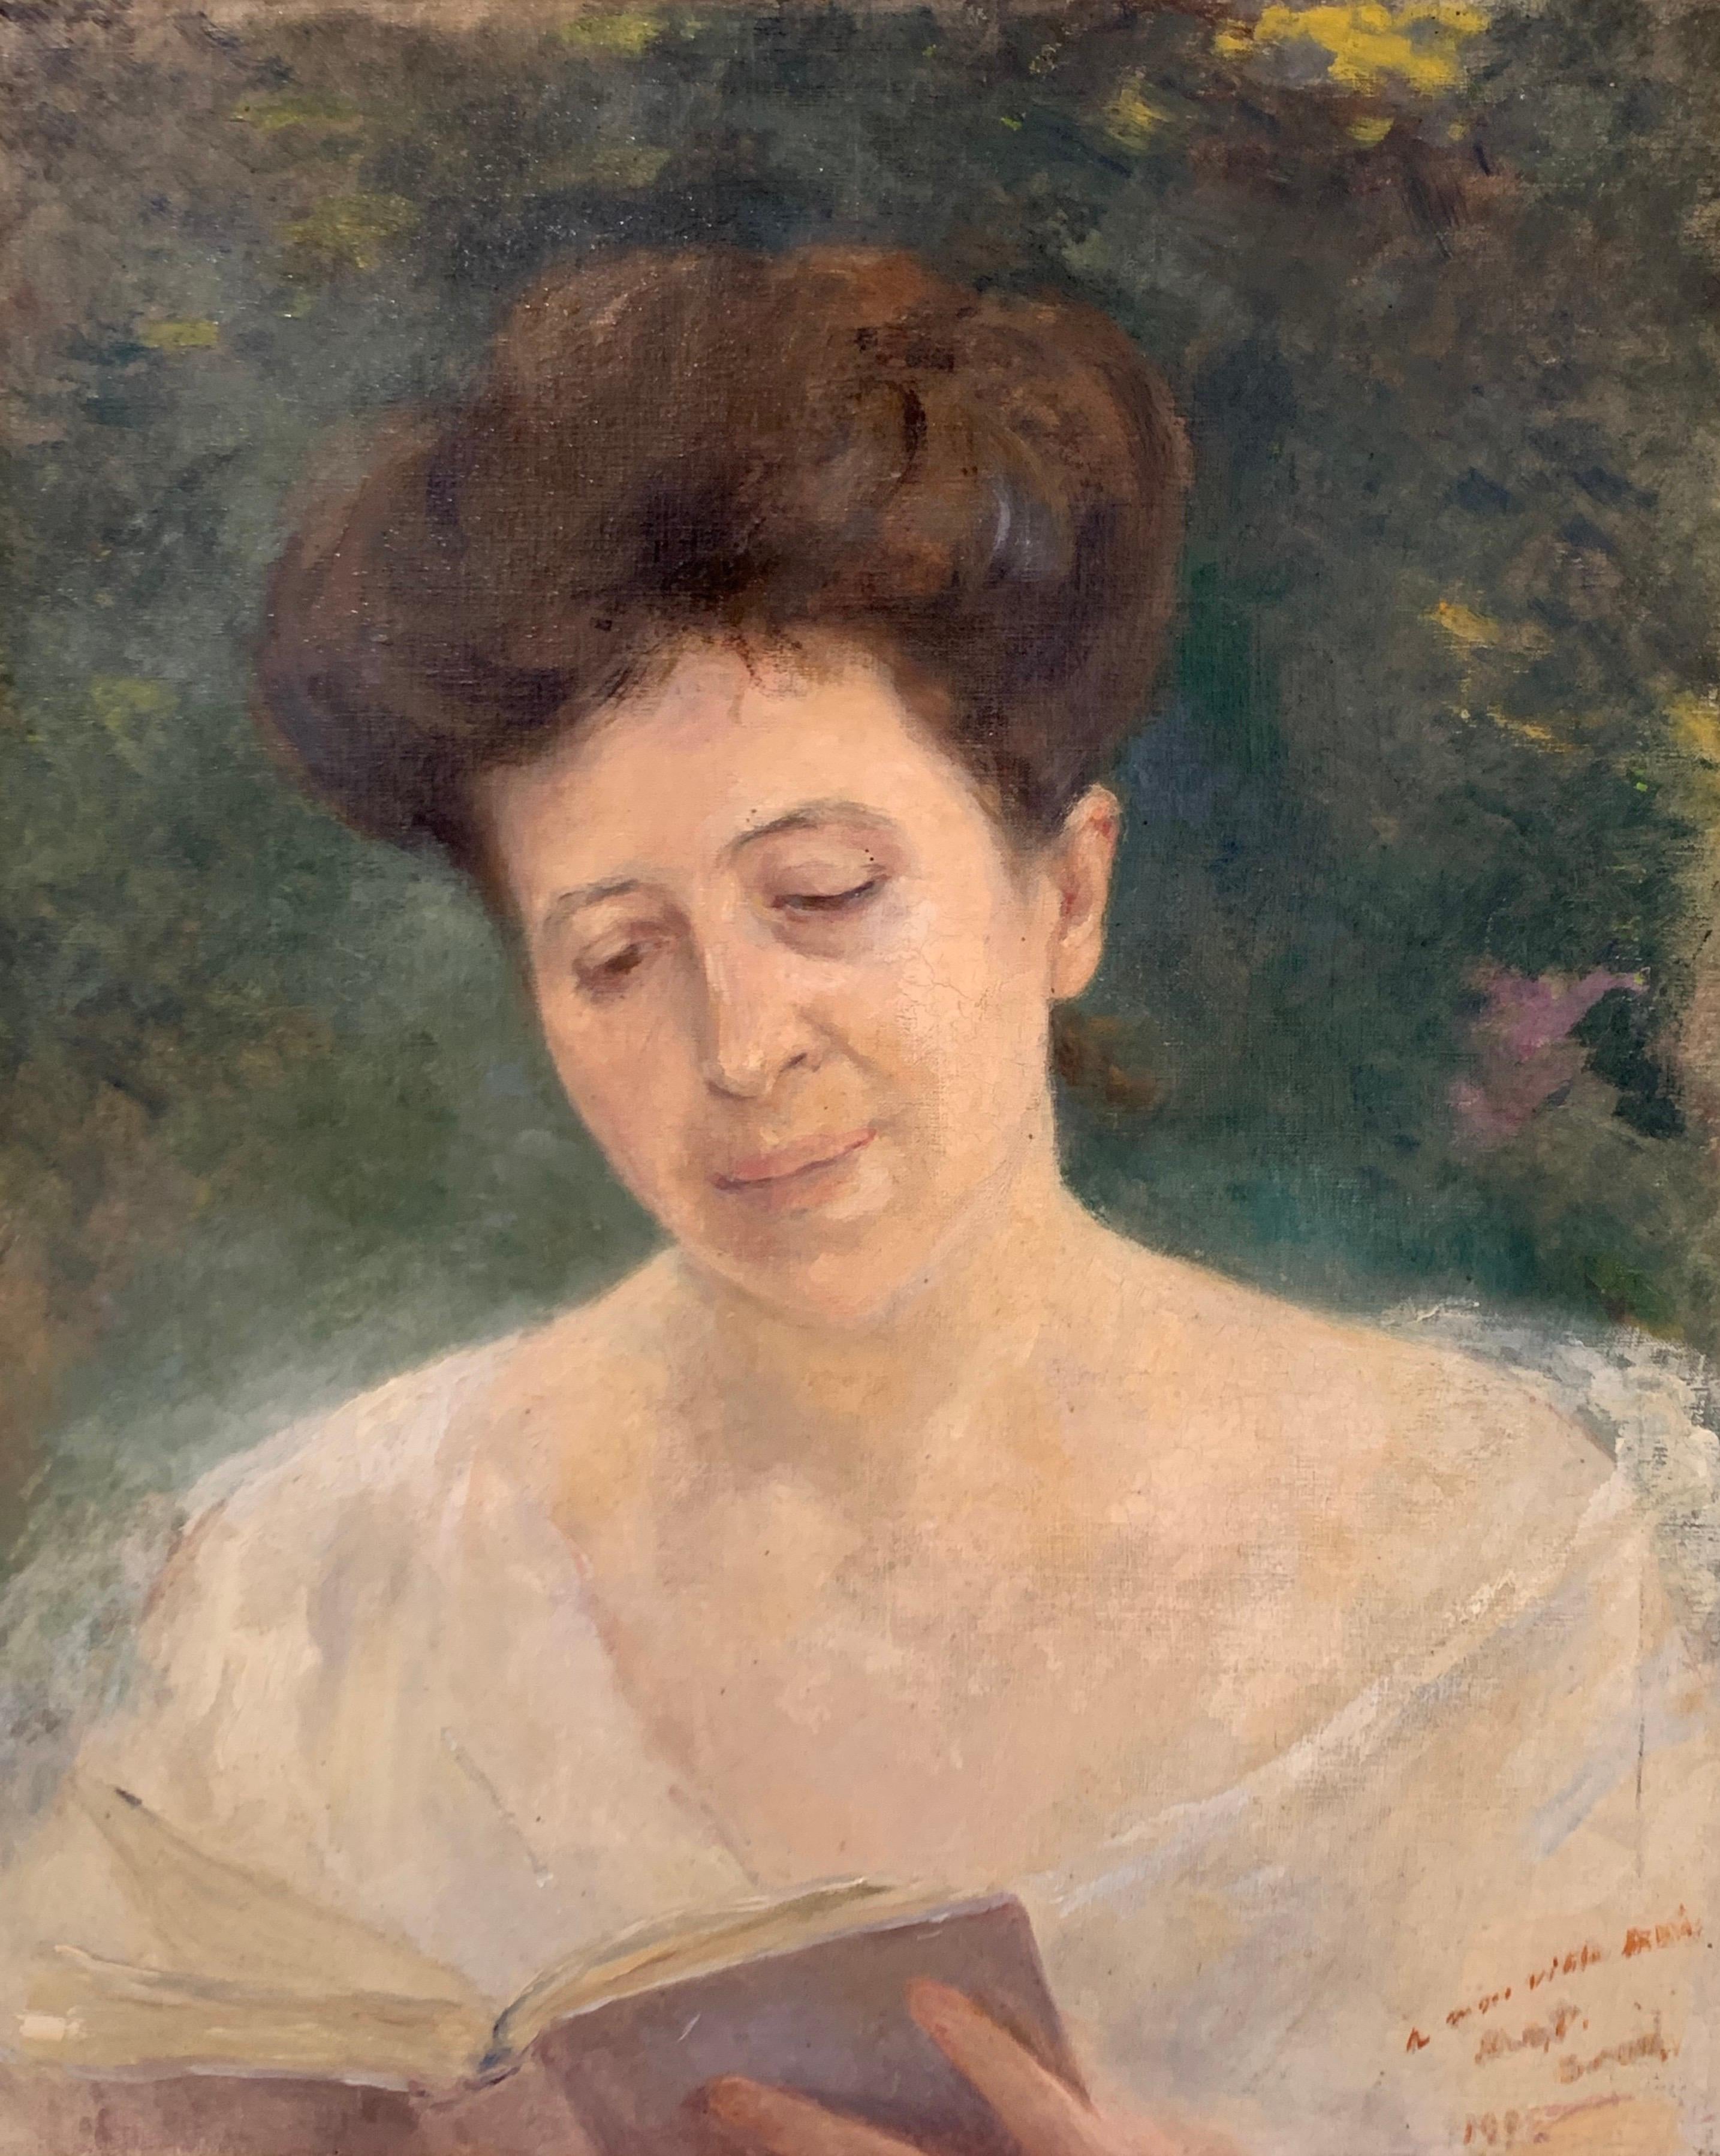 1900s portrait paintings